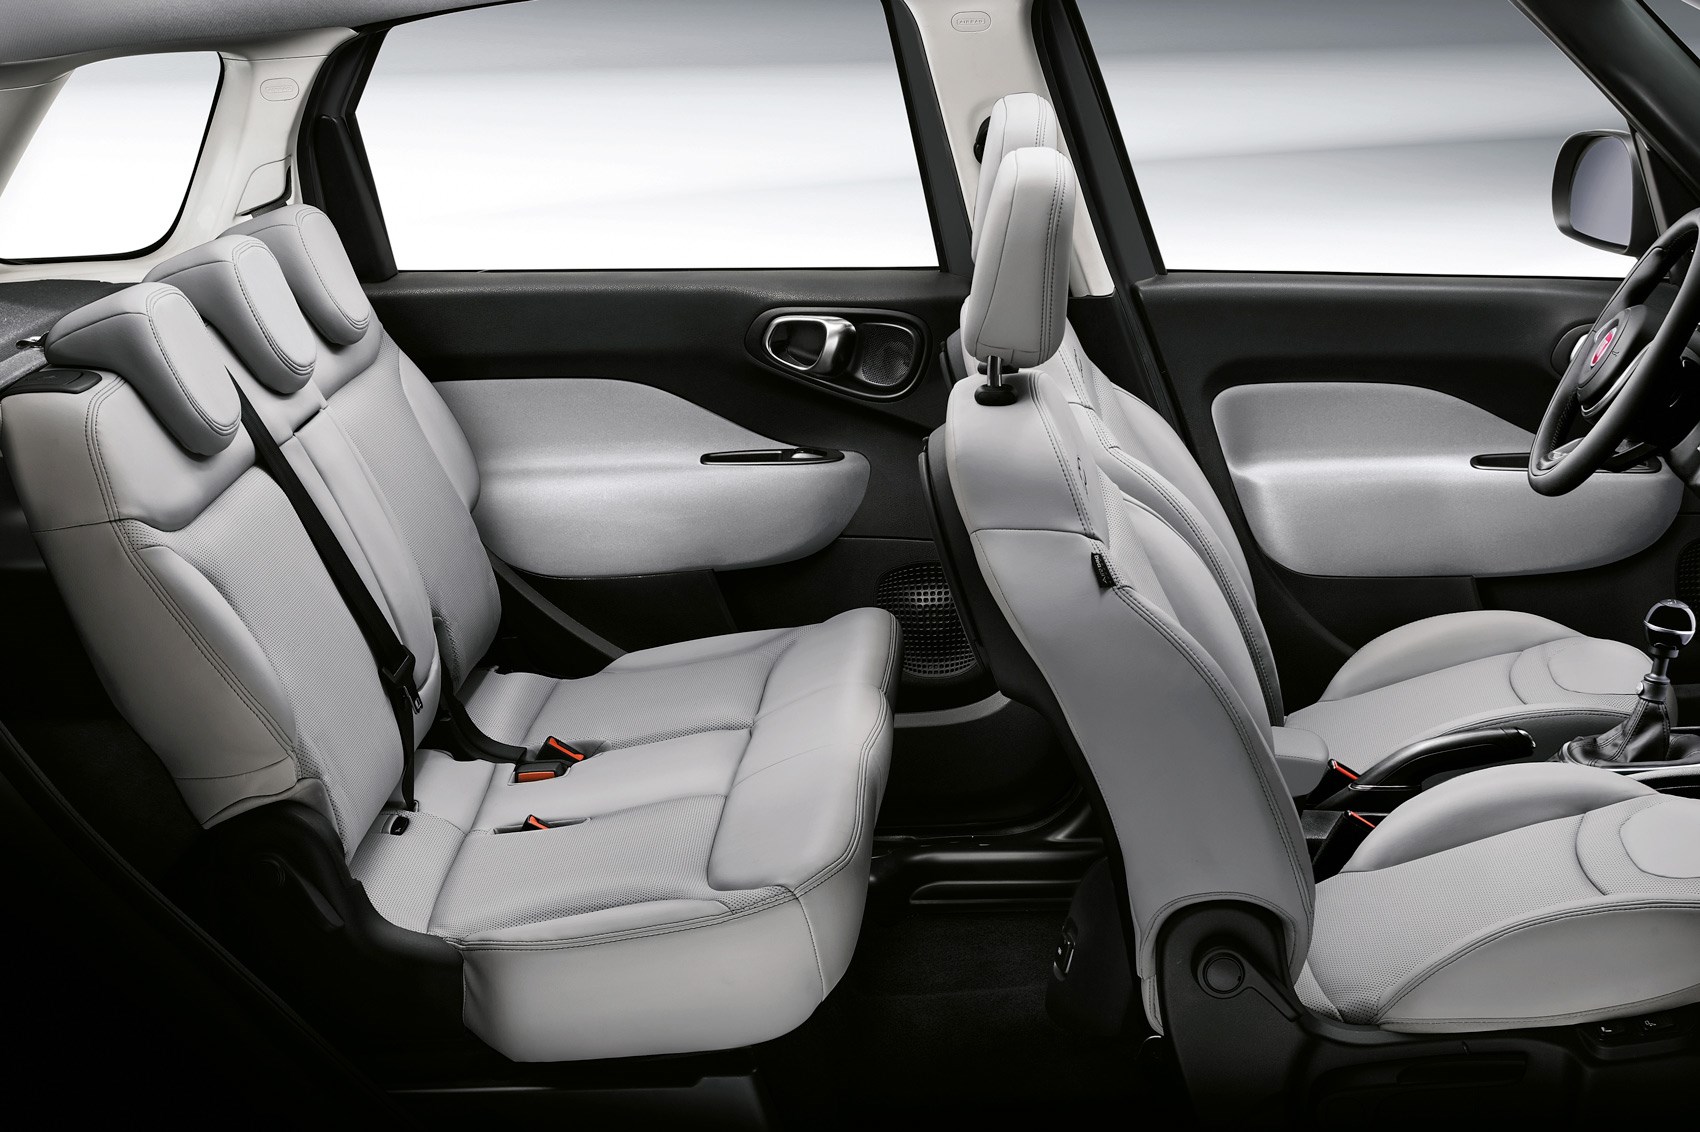 Fiat 500L interior - Seats